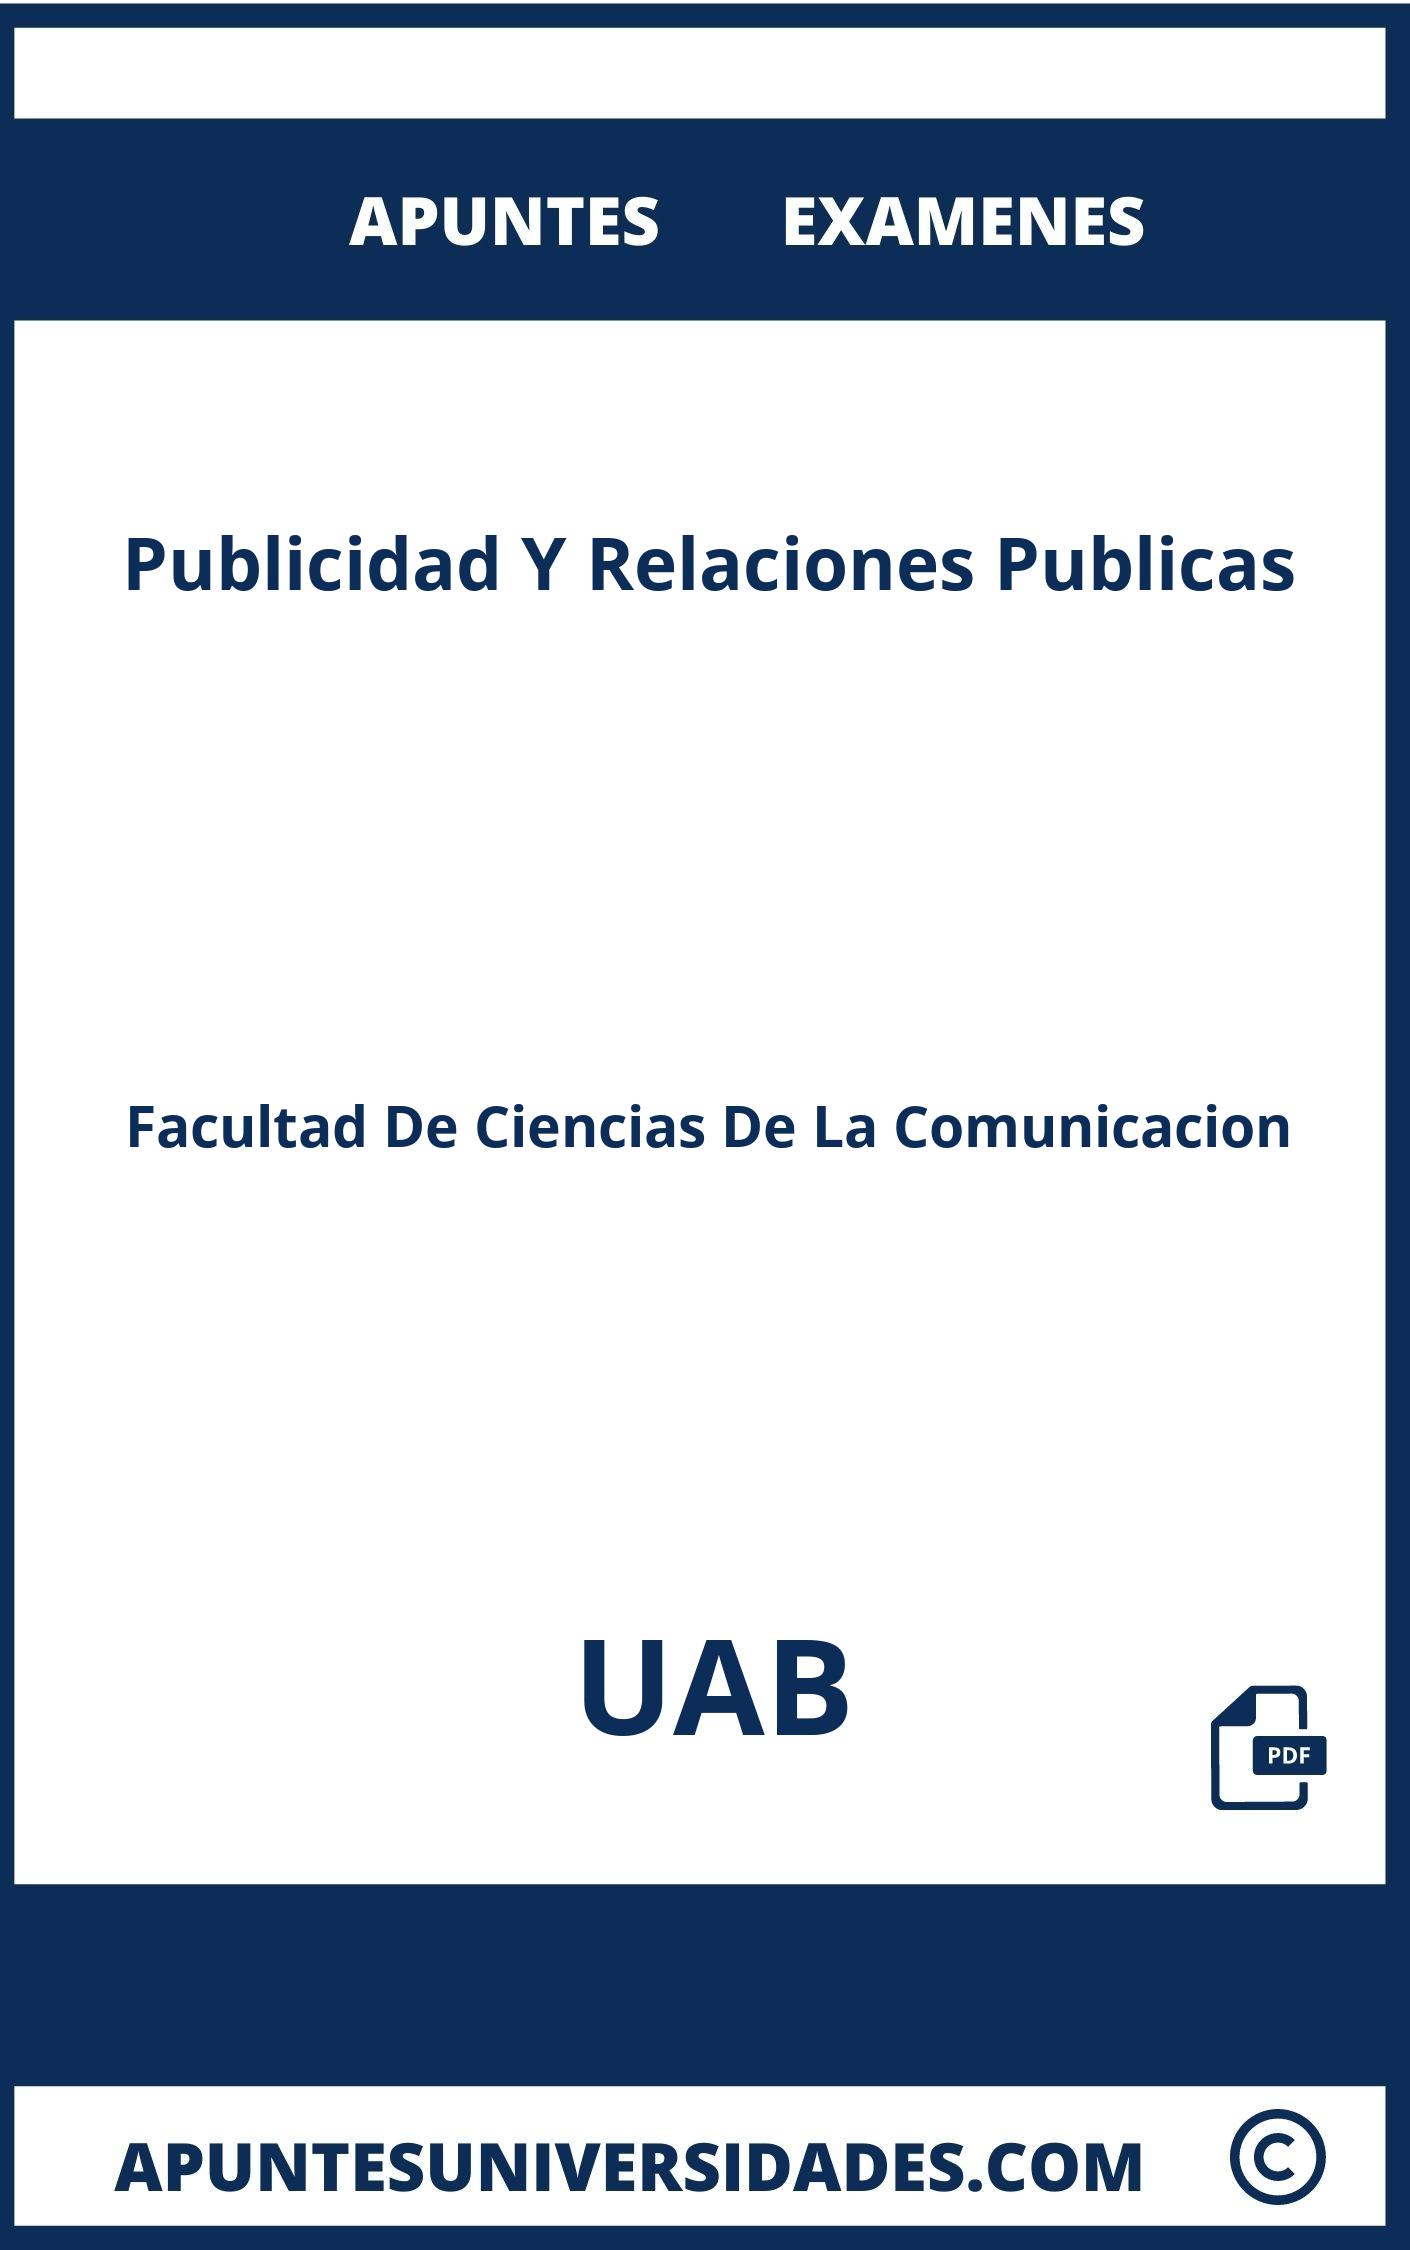 Examenes Apuntes Publicidad Y Relaciones Publicas UAB